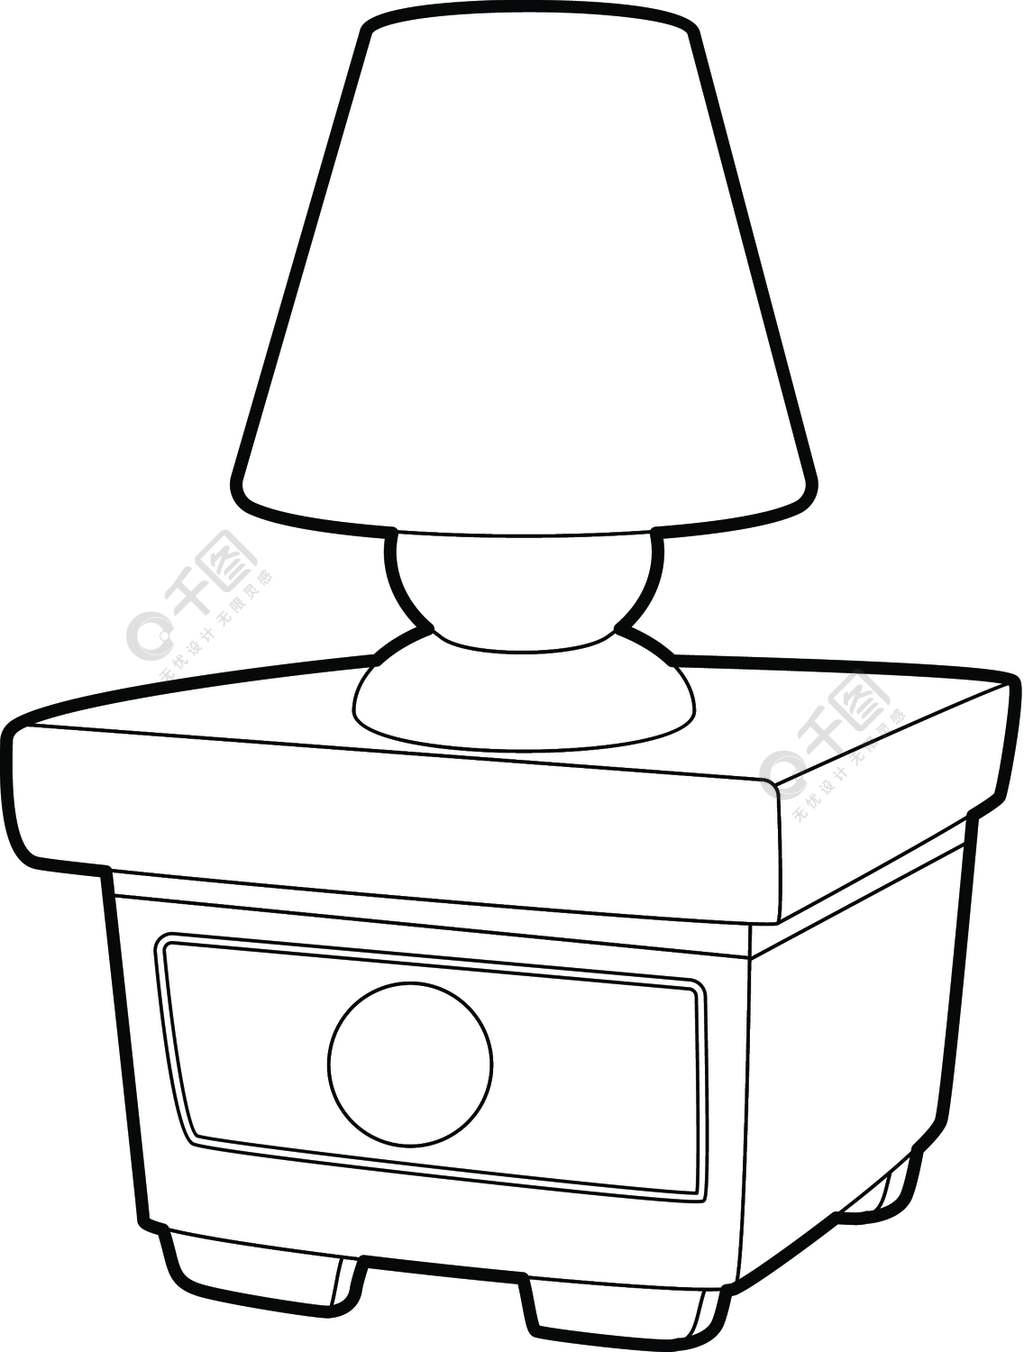 夜灯图标概述夜灯的例证在网络设计的nightstand传染